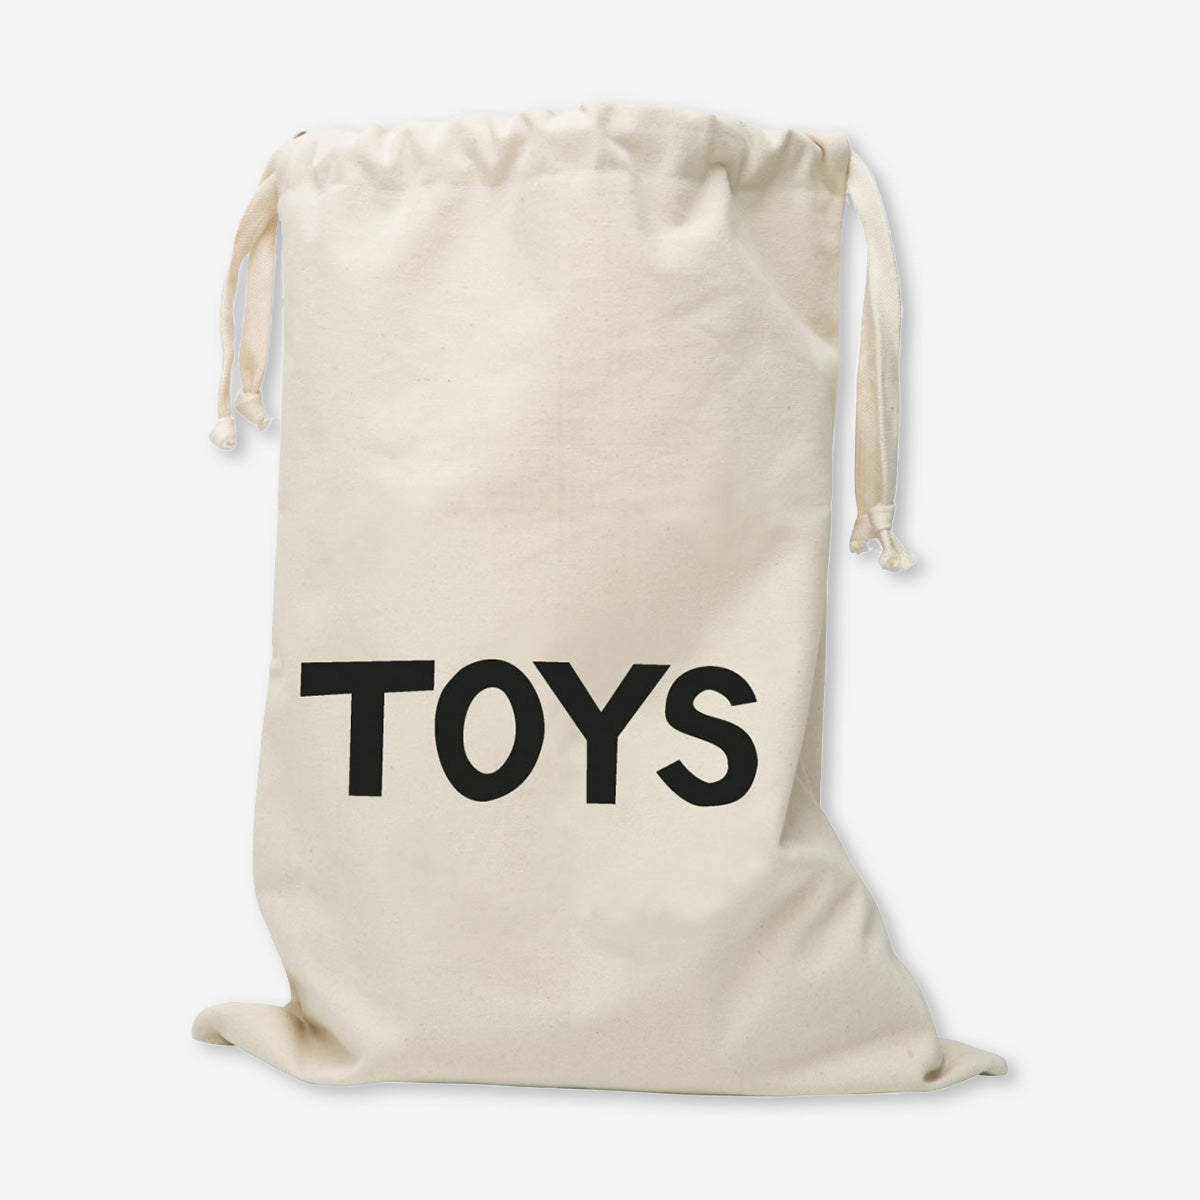 Tellkiddo Toys Fabric Storage Bag - Large